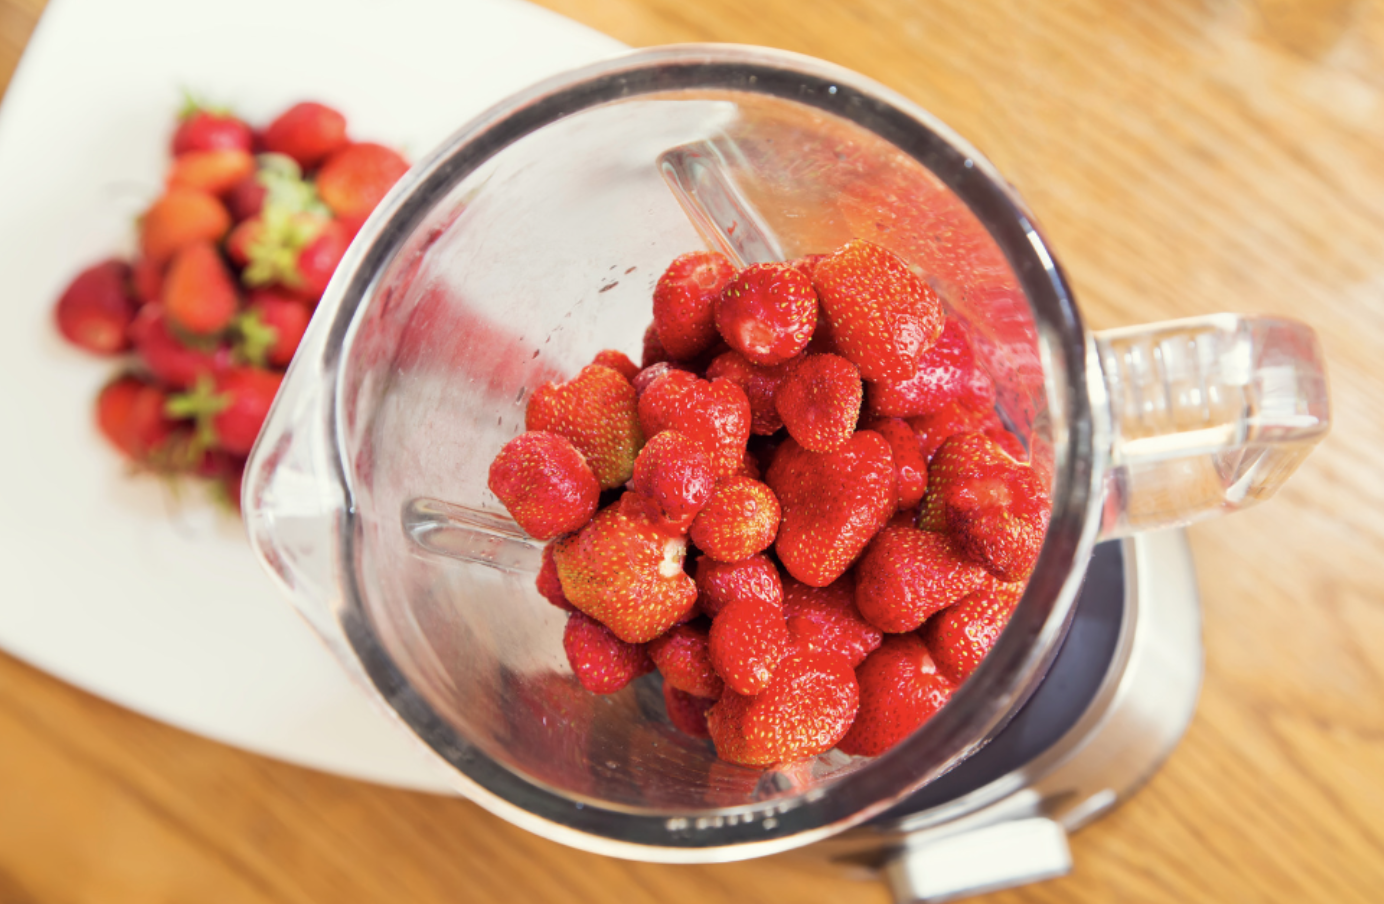 blending strawberrries